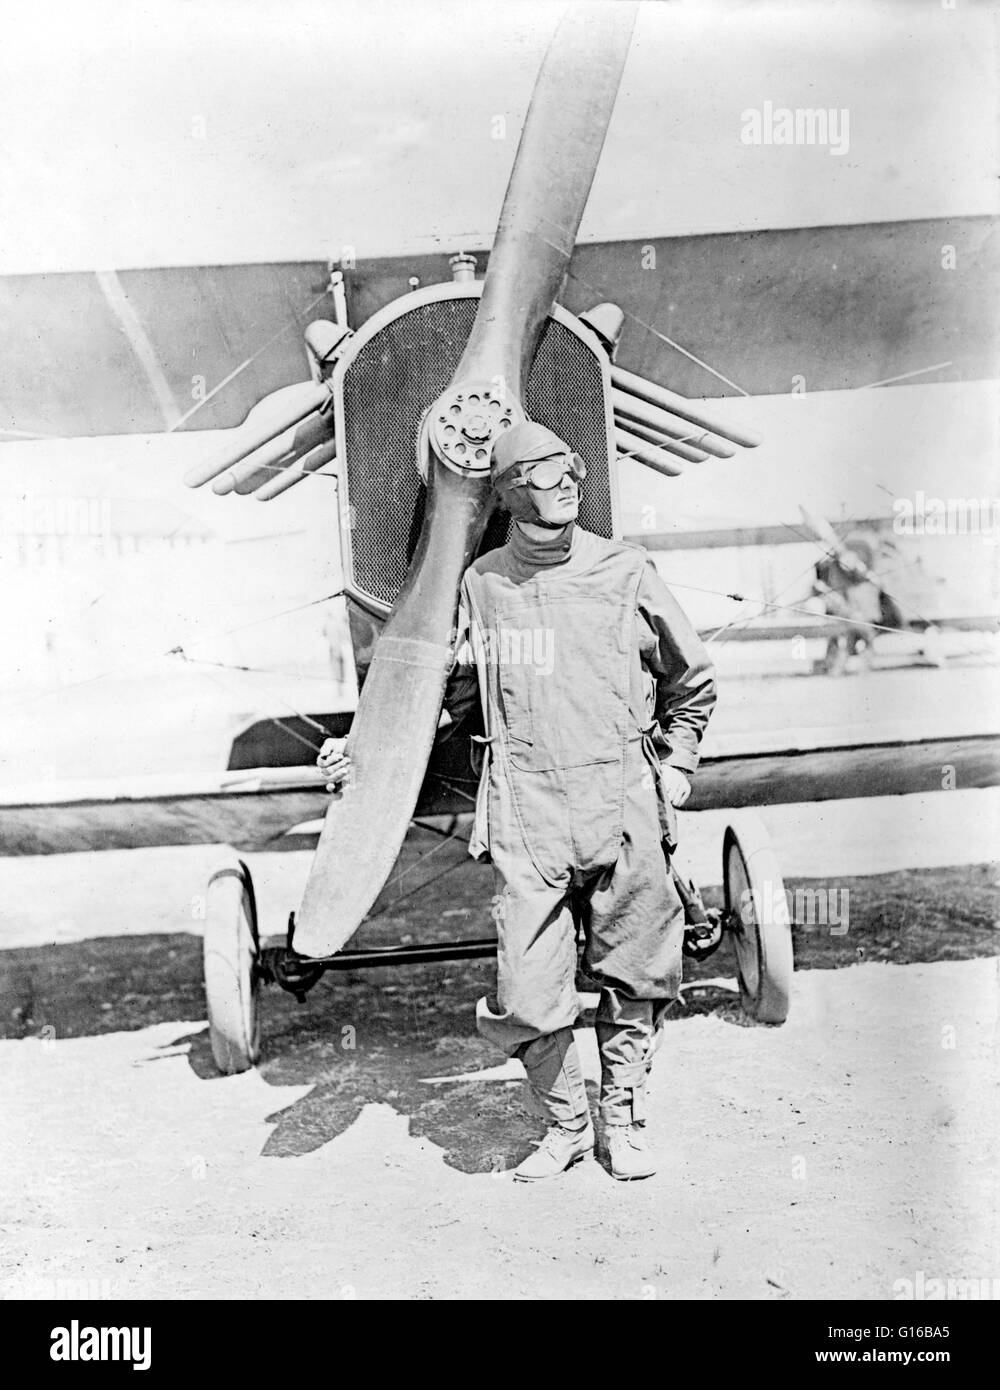 Unbekannter pilot stand vor Flugzeug der US-Armee im ersten Weltkrieg 1918. Flugdienst der United States Army, war ein Vorläufer der United States Air Force während und nach dem ersten Weltkrieg. In Frankreich, der Air-Service von der amerikanischen Expeditionar Stockfoto